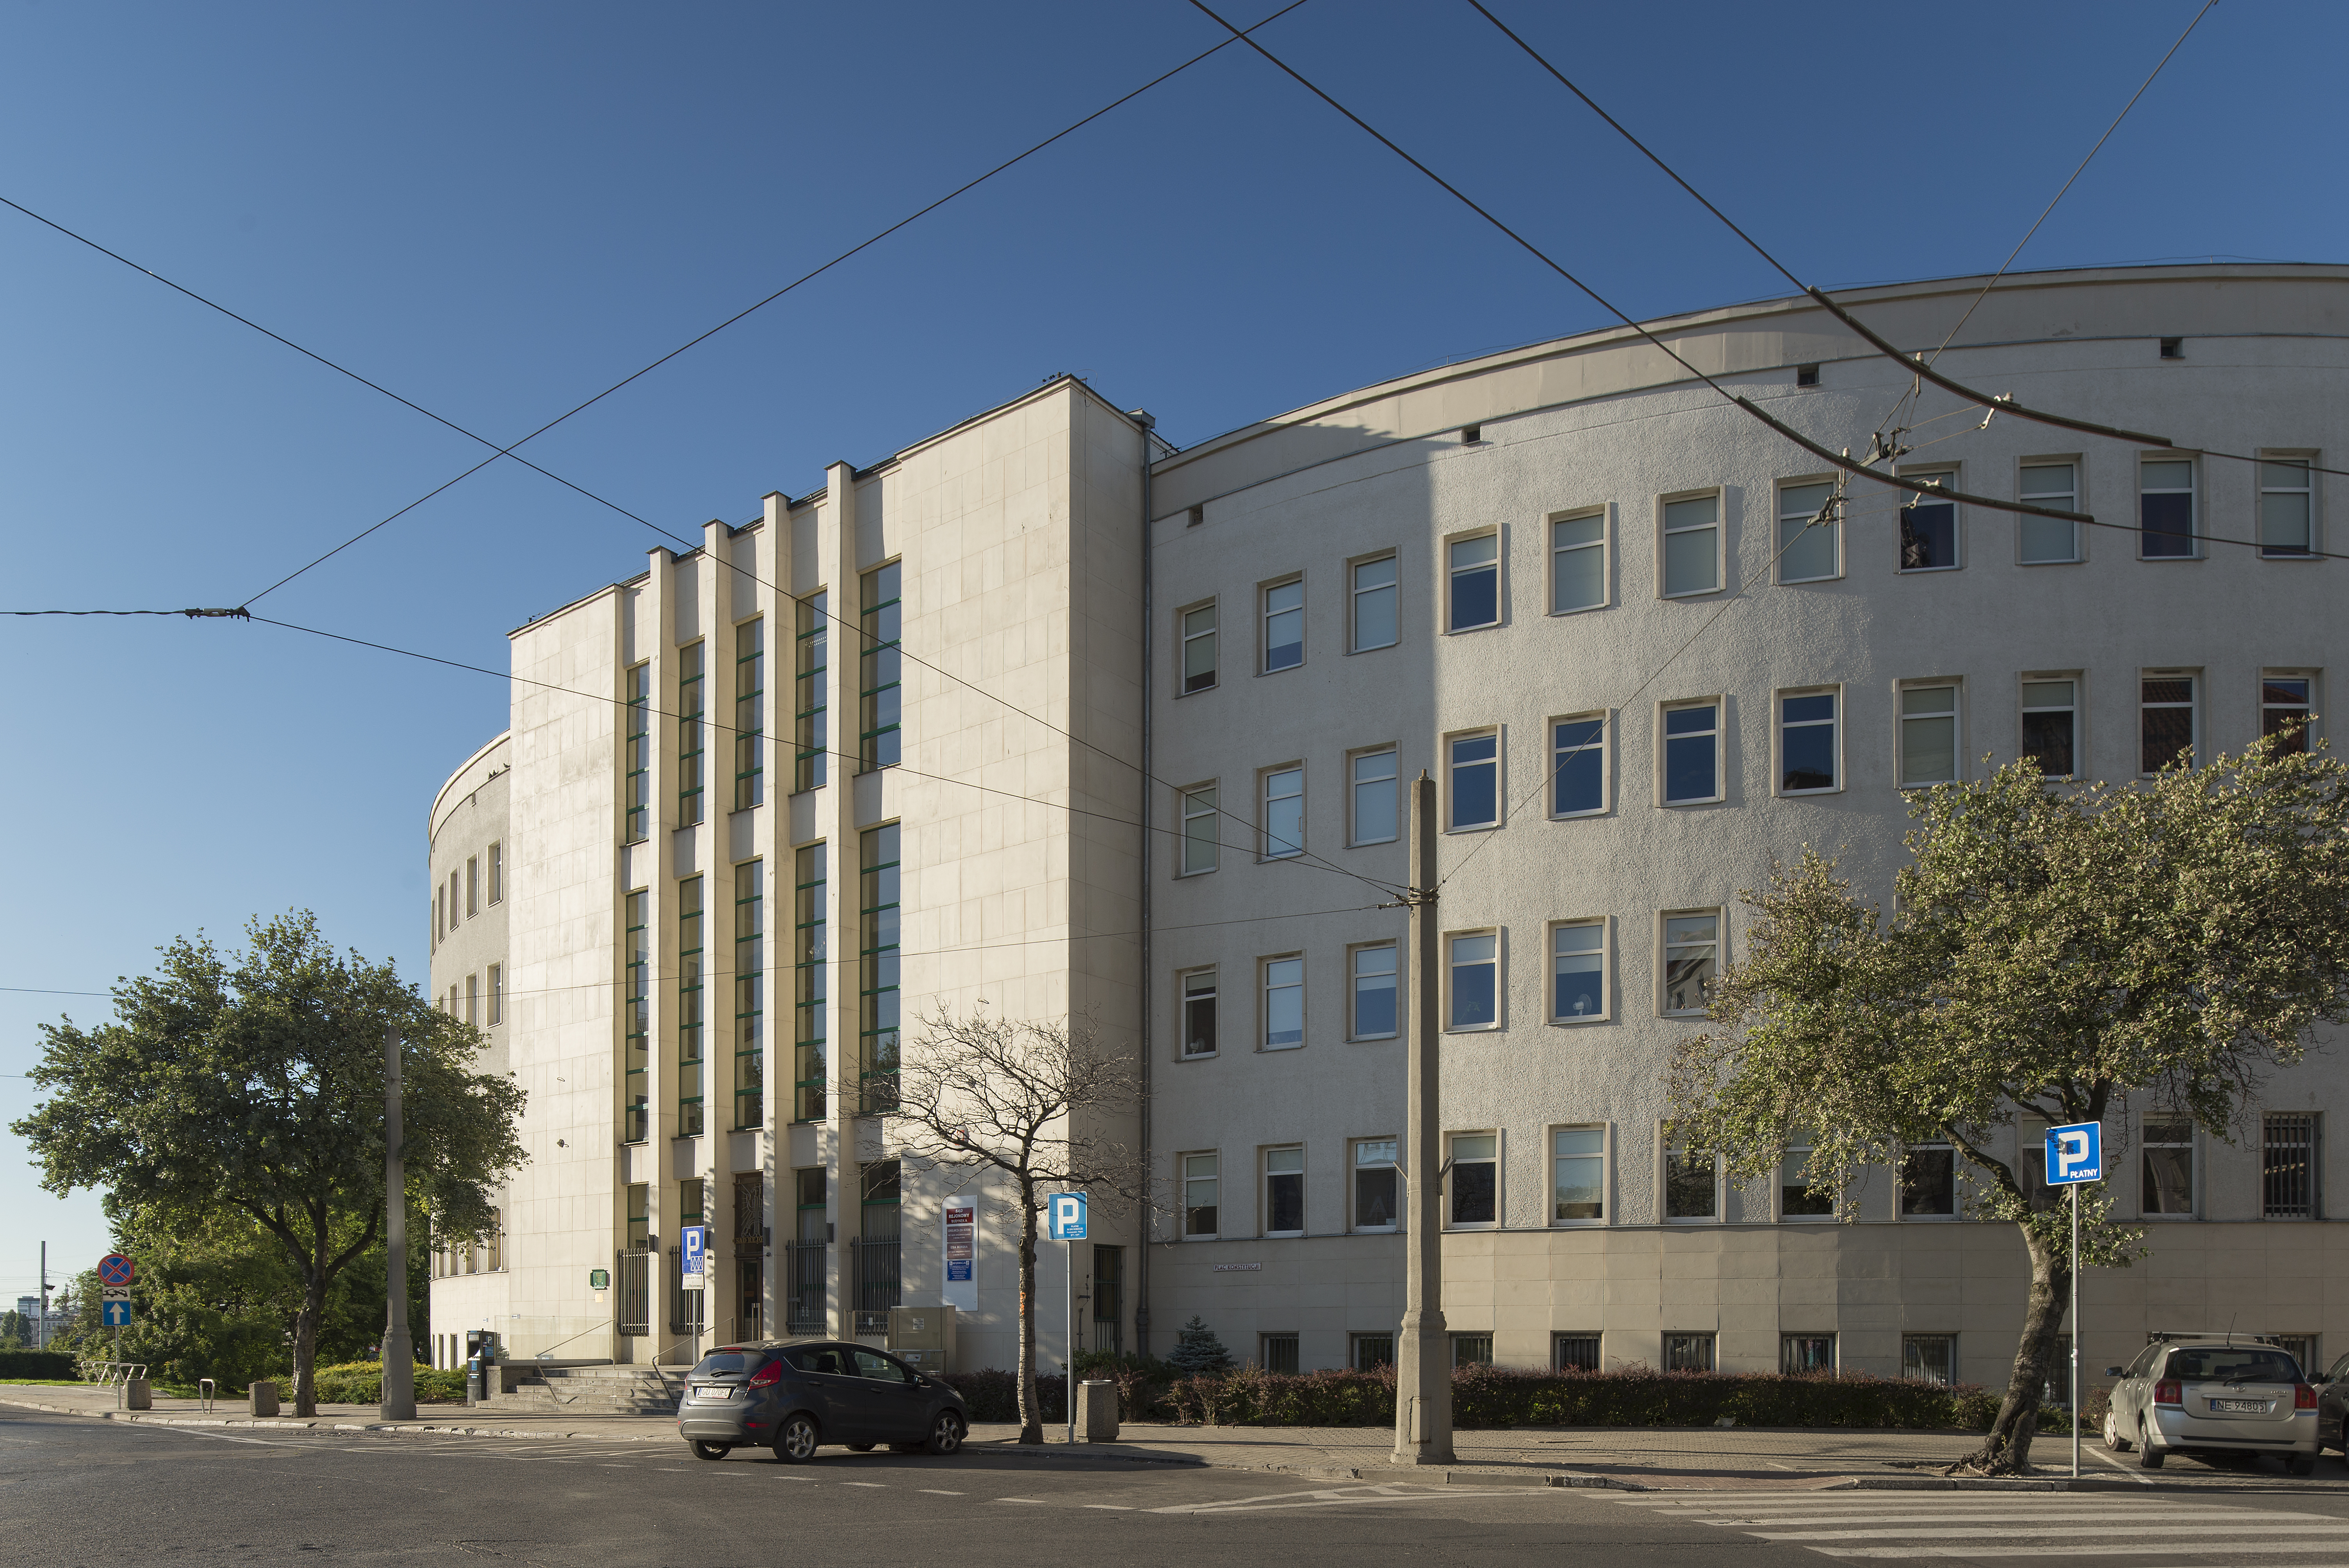 Budynek Sądu Rejonowego przy pl. Konstytucji 5, płyty kamienne ułożono na najważniejszych częściach elewacji, w tym na ryzalicie części wejściowej i cokołach